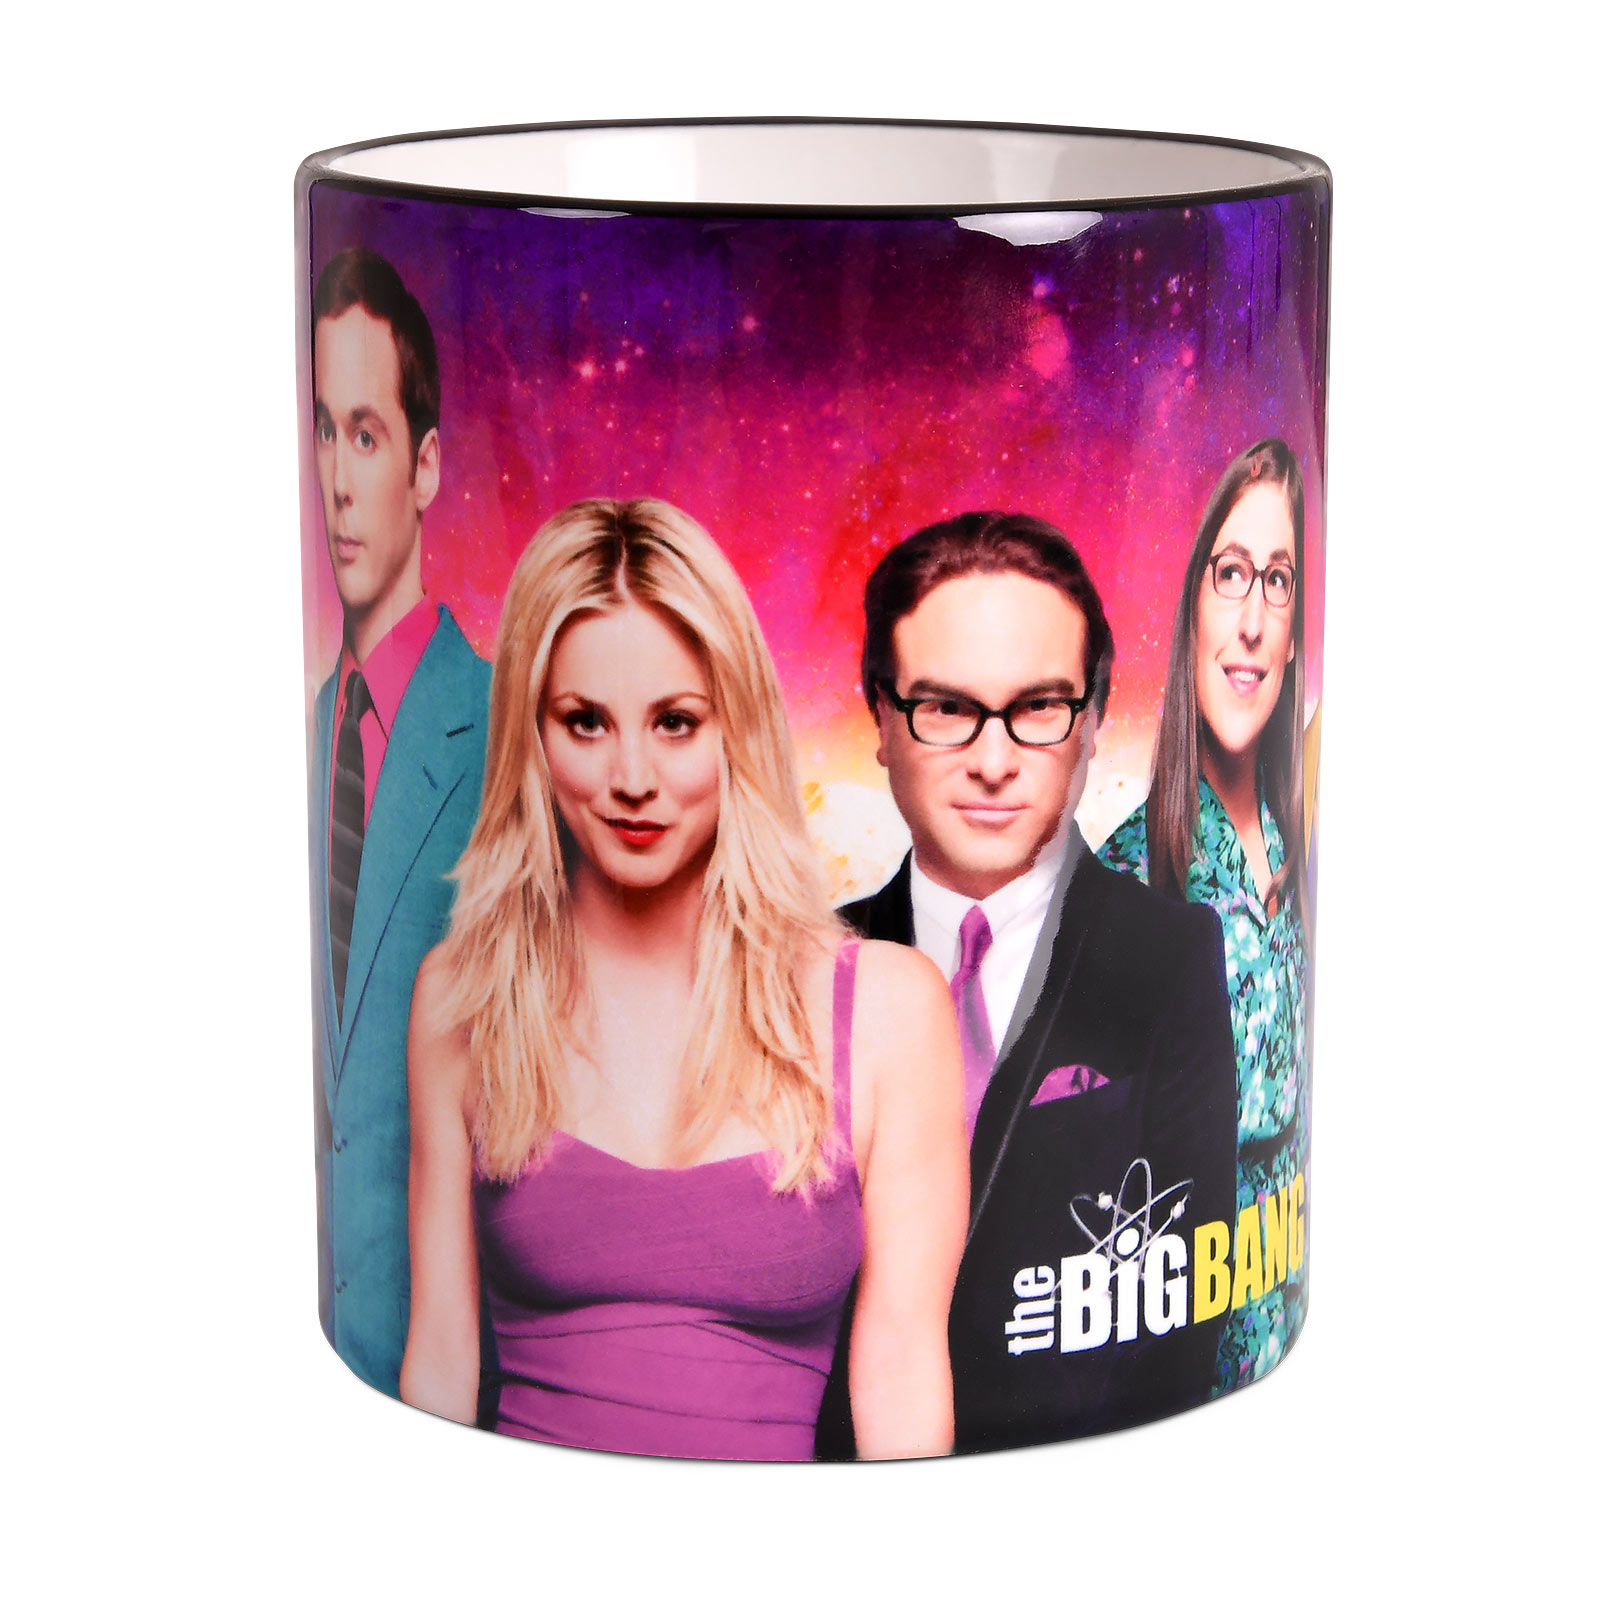 Big Bang Theory - Collage Mok